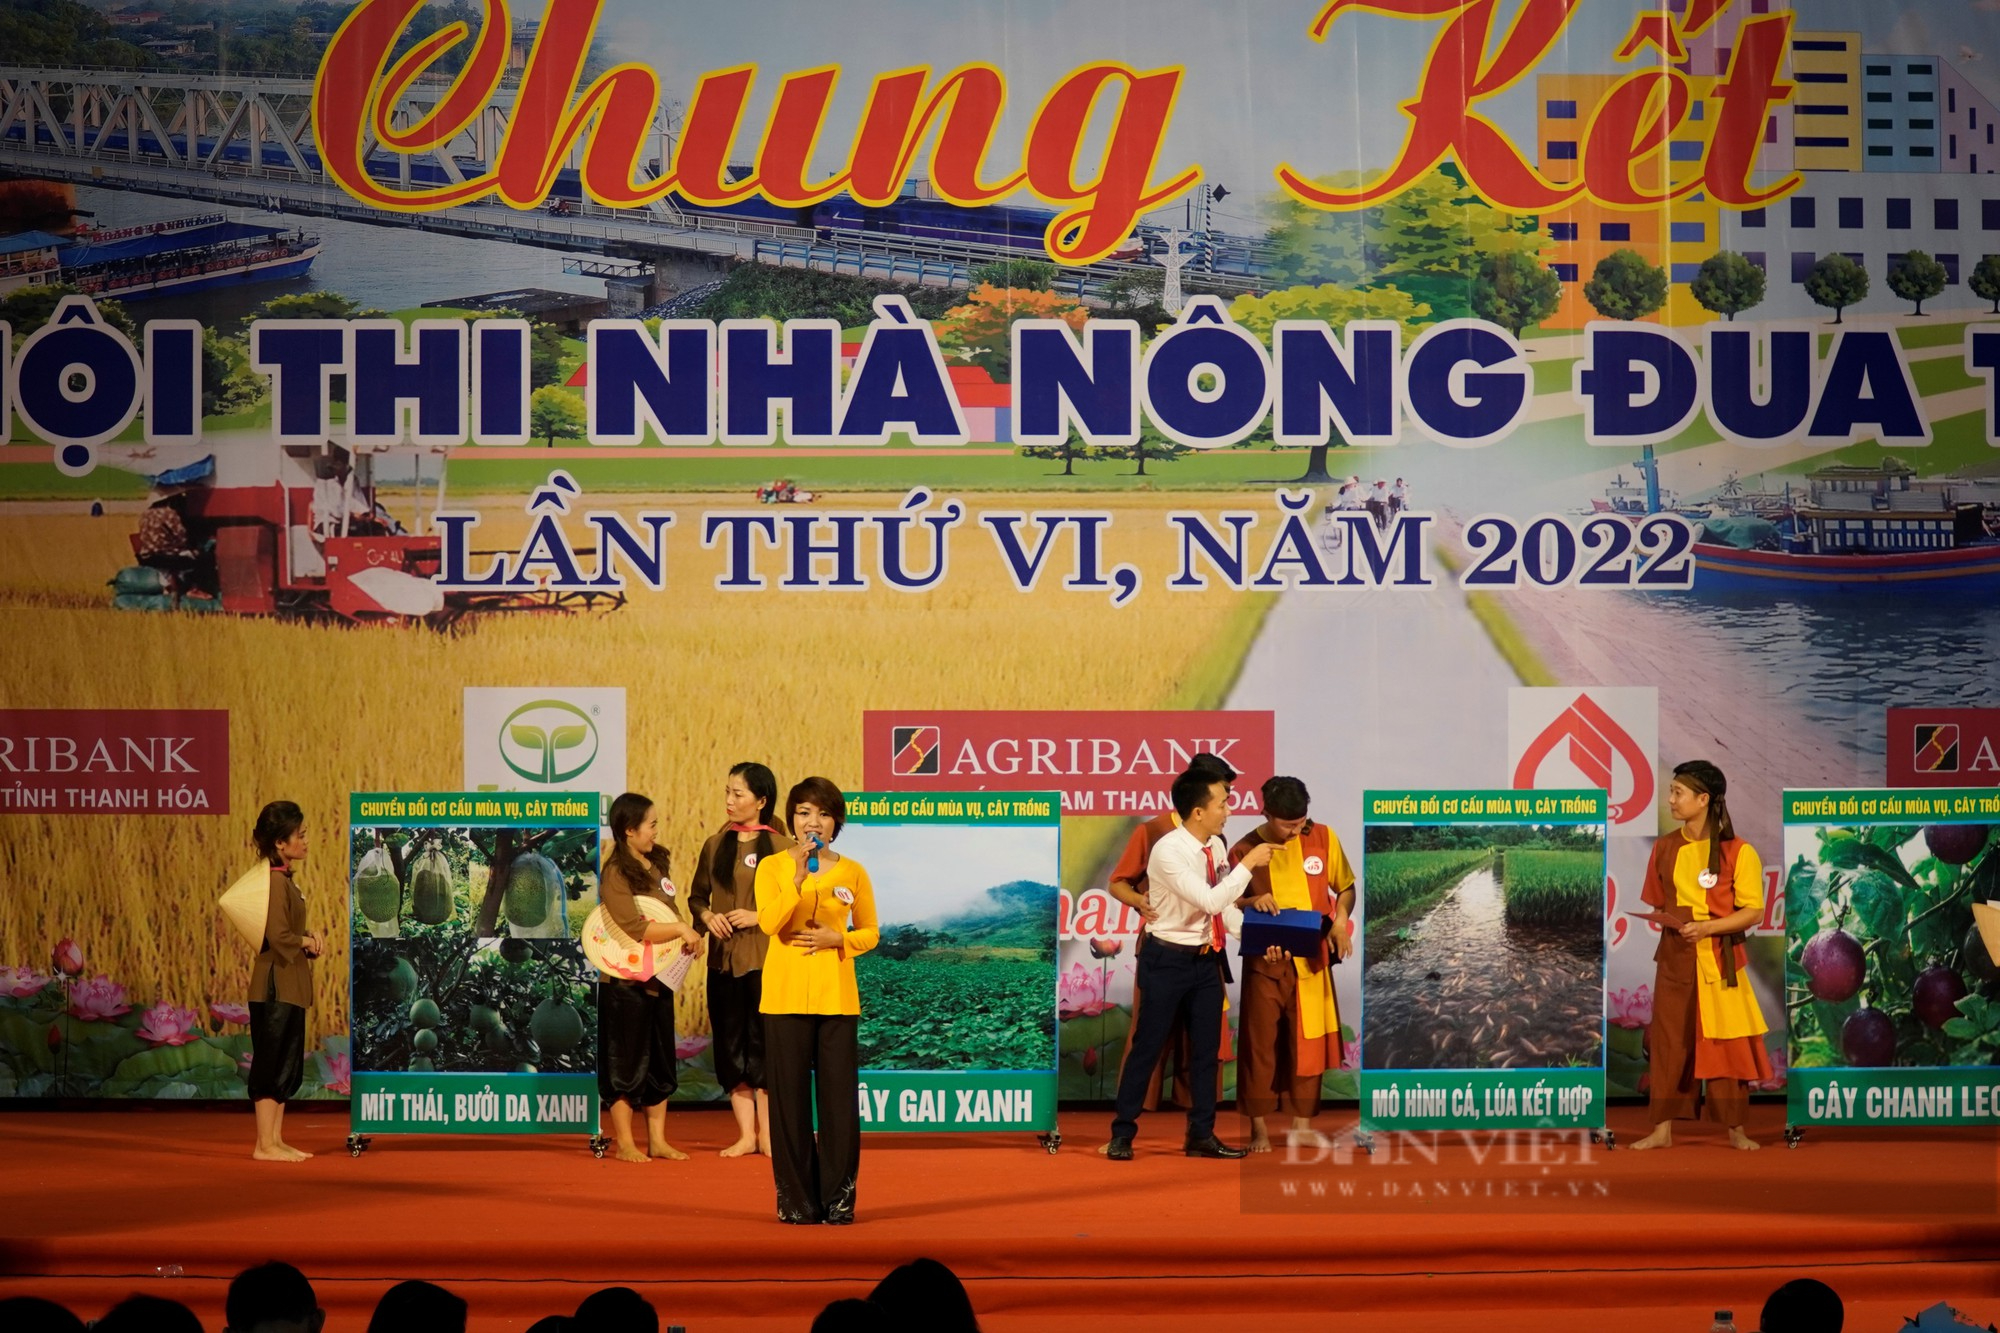 Chung kết Hội thi Nhà nông đua tài tỉnh Thanh Hóa năm 2022, Hội Nông dân huyện Đông Sơn đạt giải Nhất - Ảnh 6.